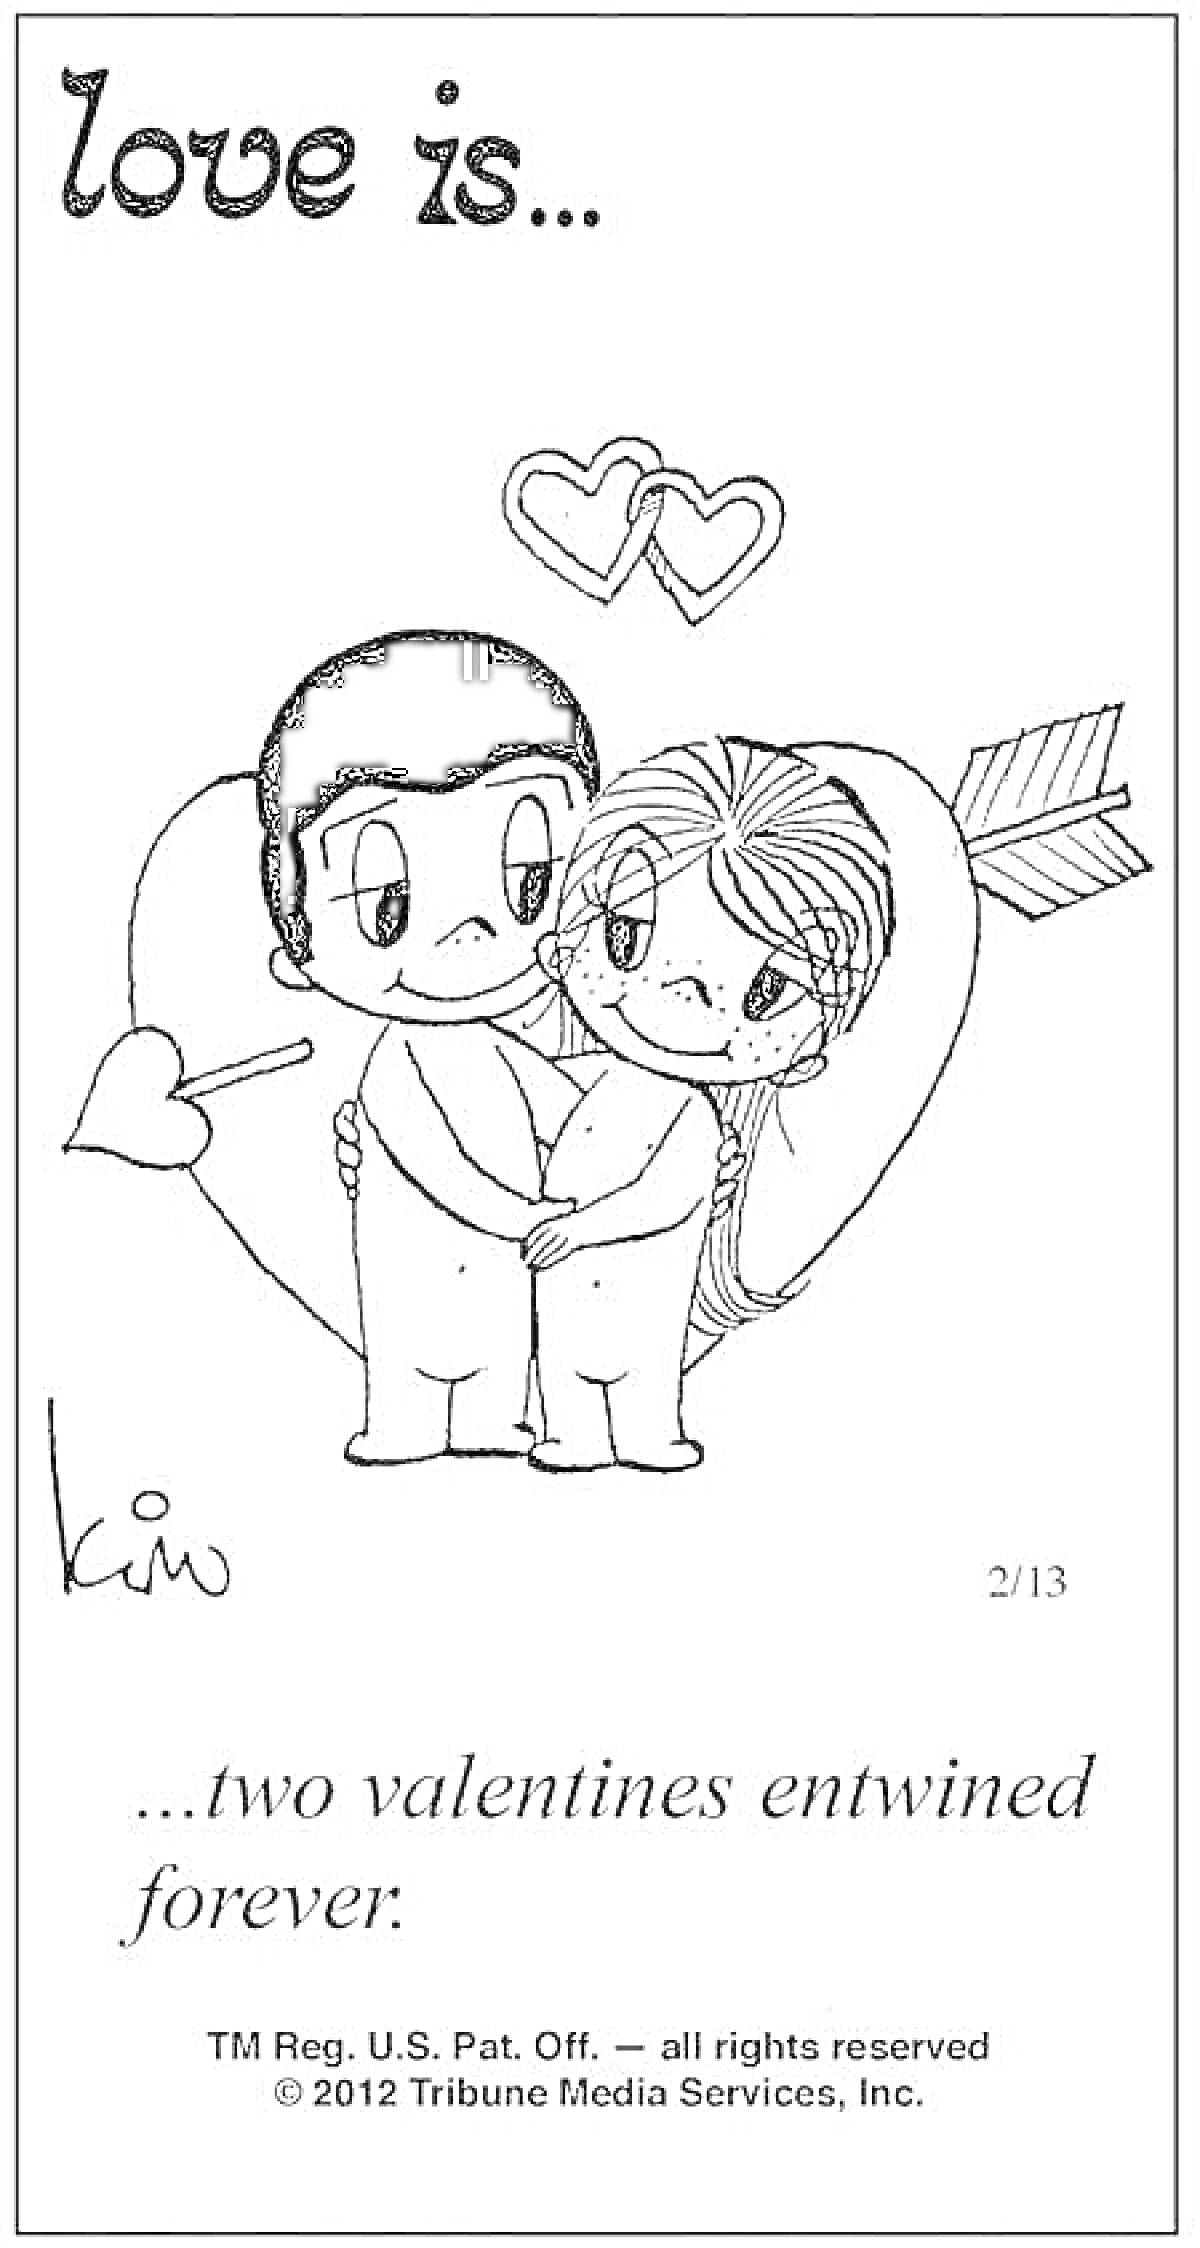 Раскраска два валентина, сплетенные навсегда: двое людей, обнимающихся на фоне сердца с сердцем-стрелой, держащиеся за руки